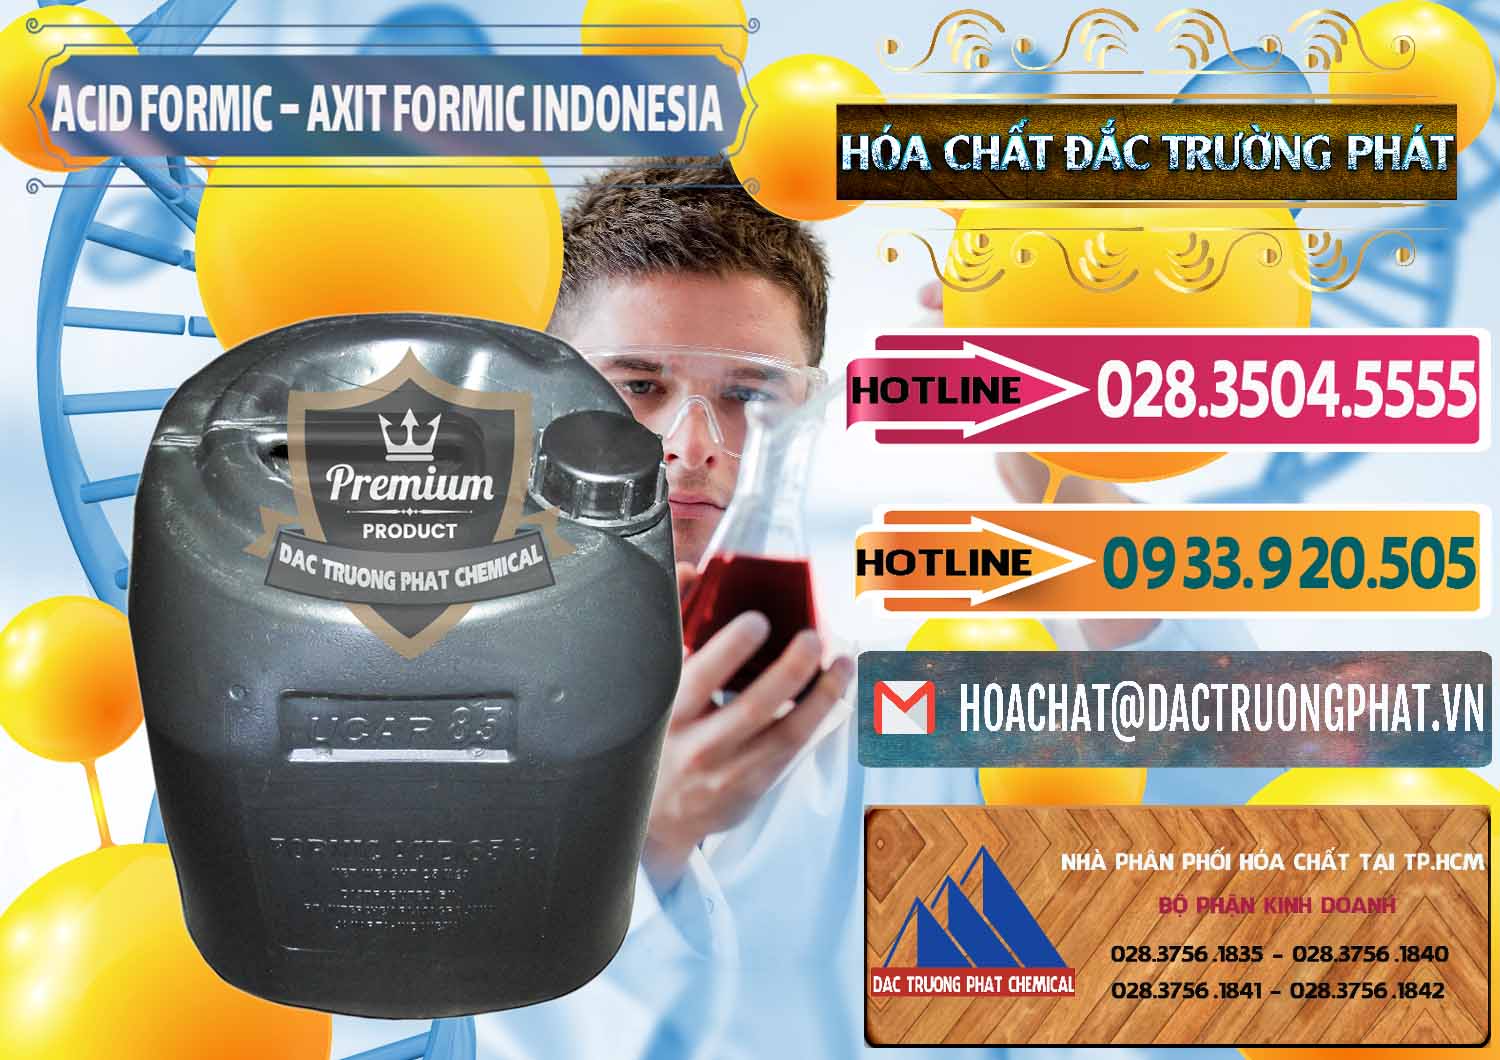 Đơn vị chuyên cung cấp _ bán Acid Formic - Axit Formic Indonesia - 0026 - Nơi chuyên kinh doanh _ phân phối hóa chất tại TP.HCM - dactruongphat.vn